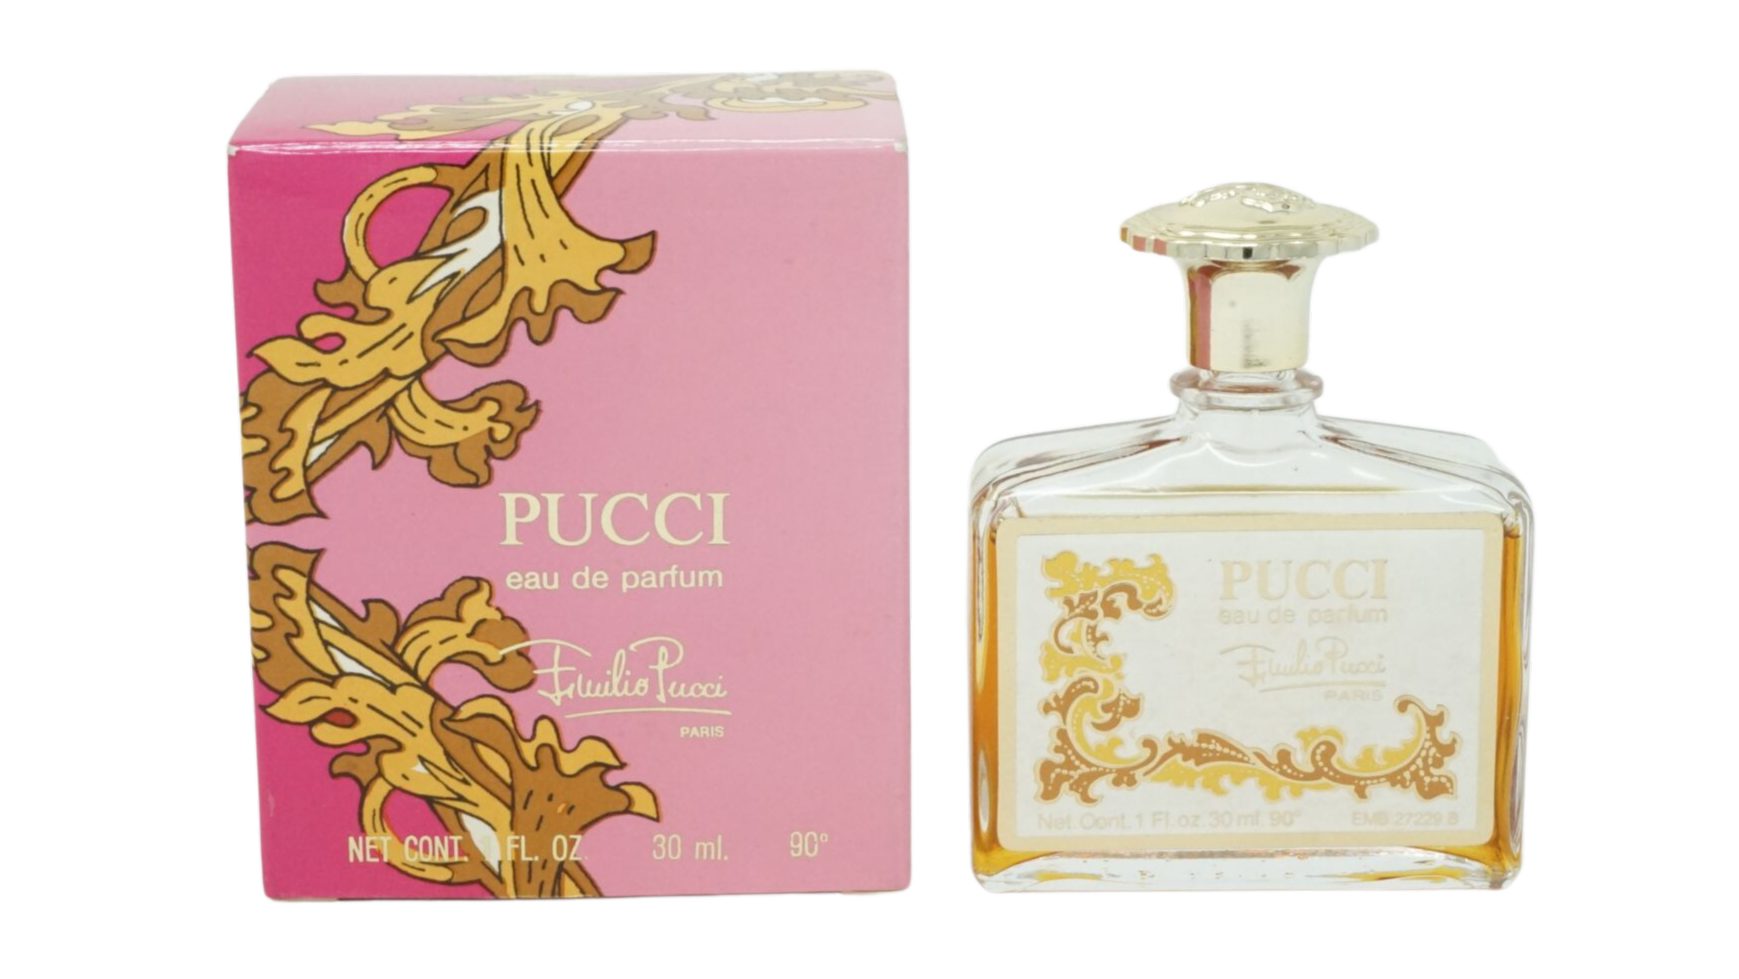 EMILIO PUCCI Eau de Parfum Emilio Pucci Pucci Eau de Parfum 30ml